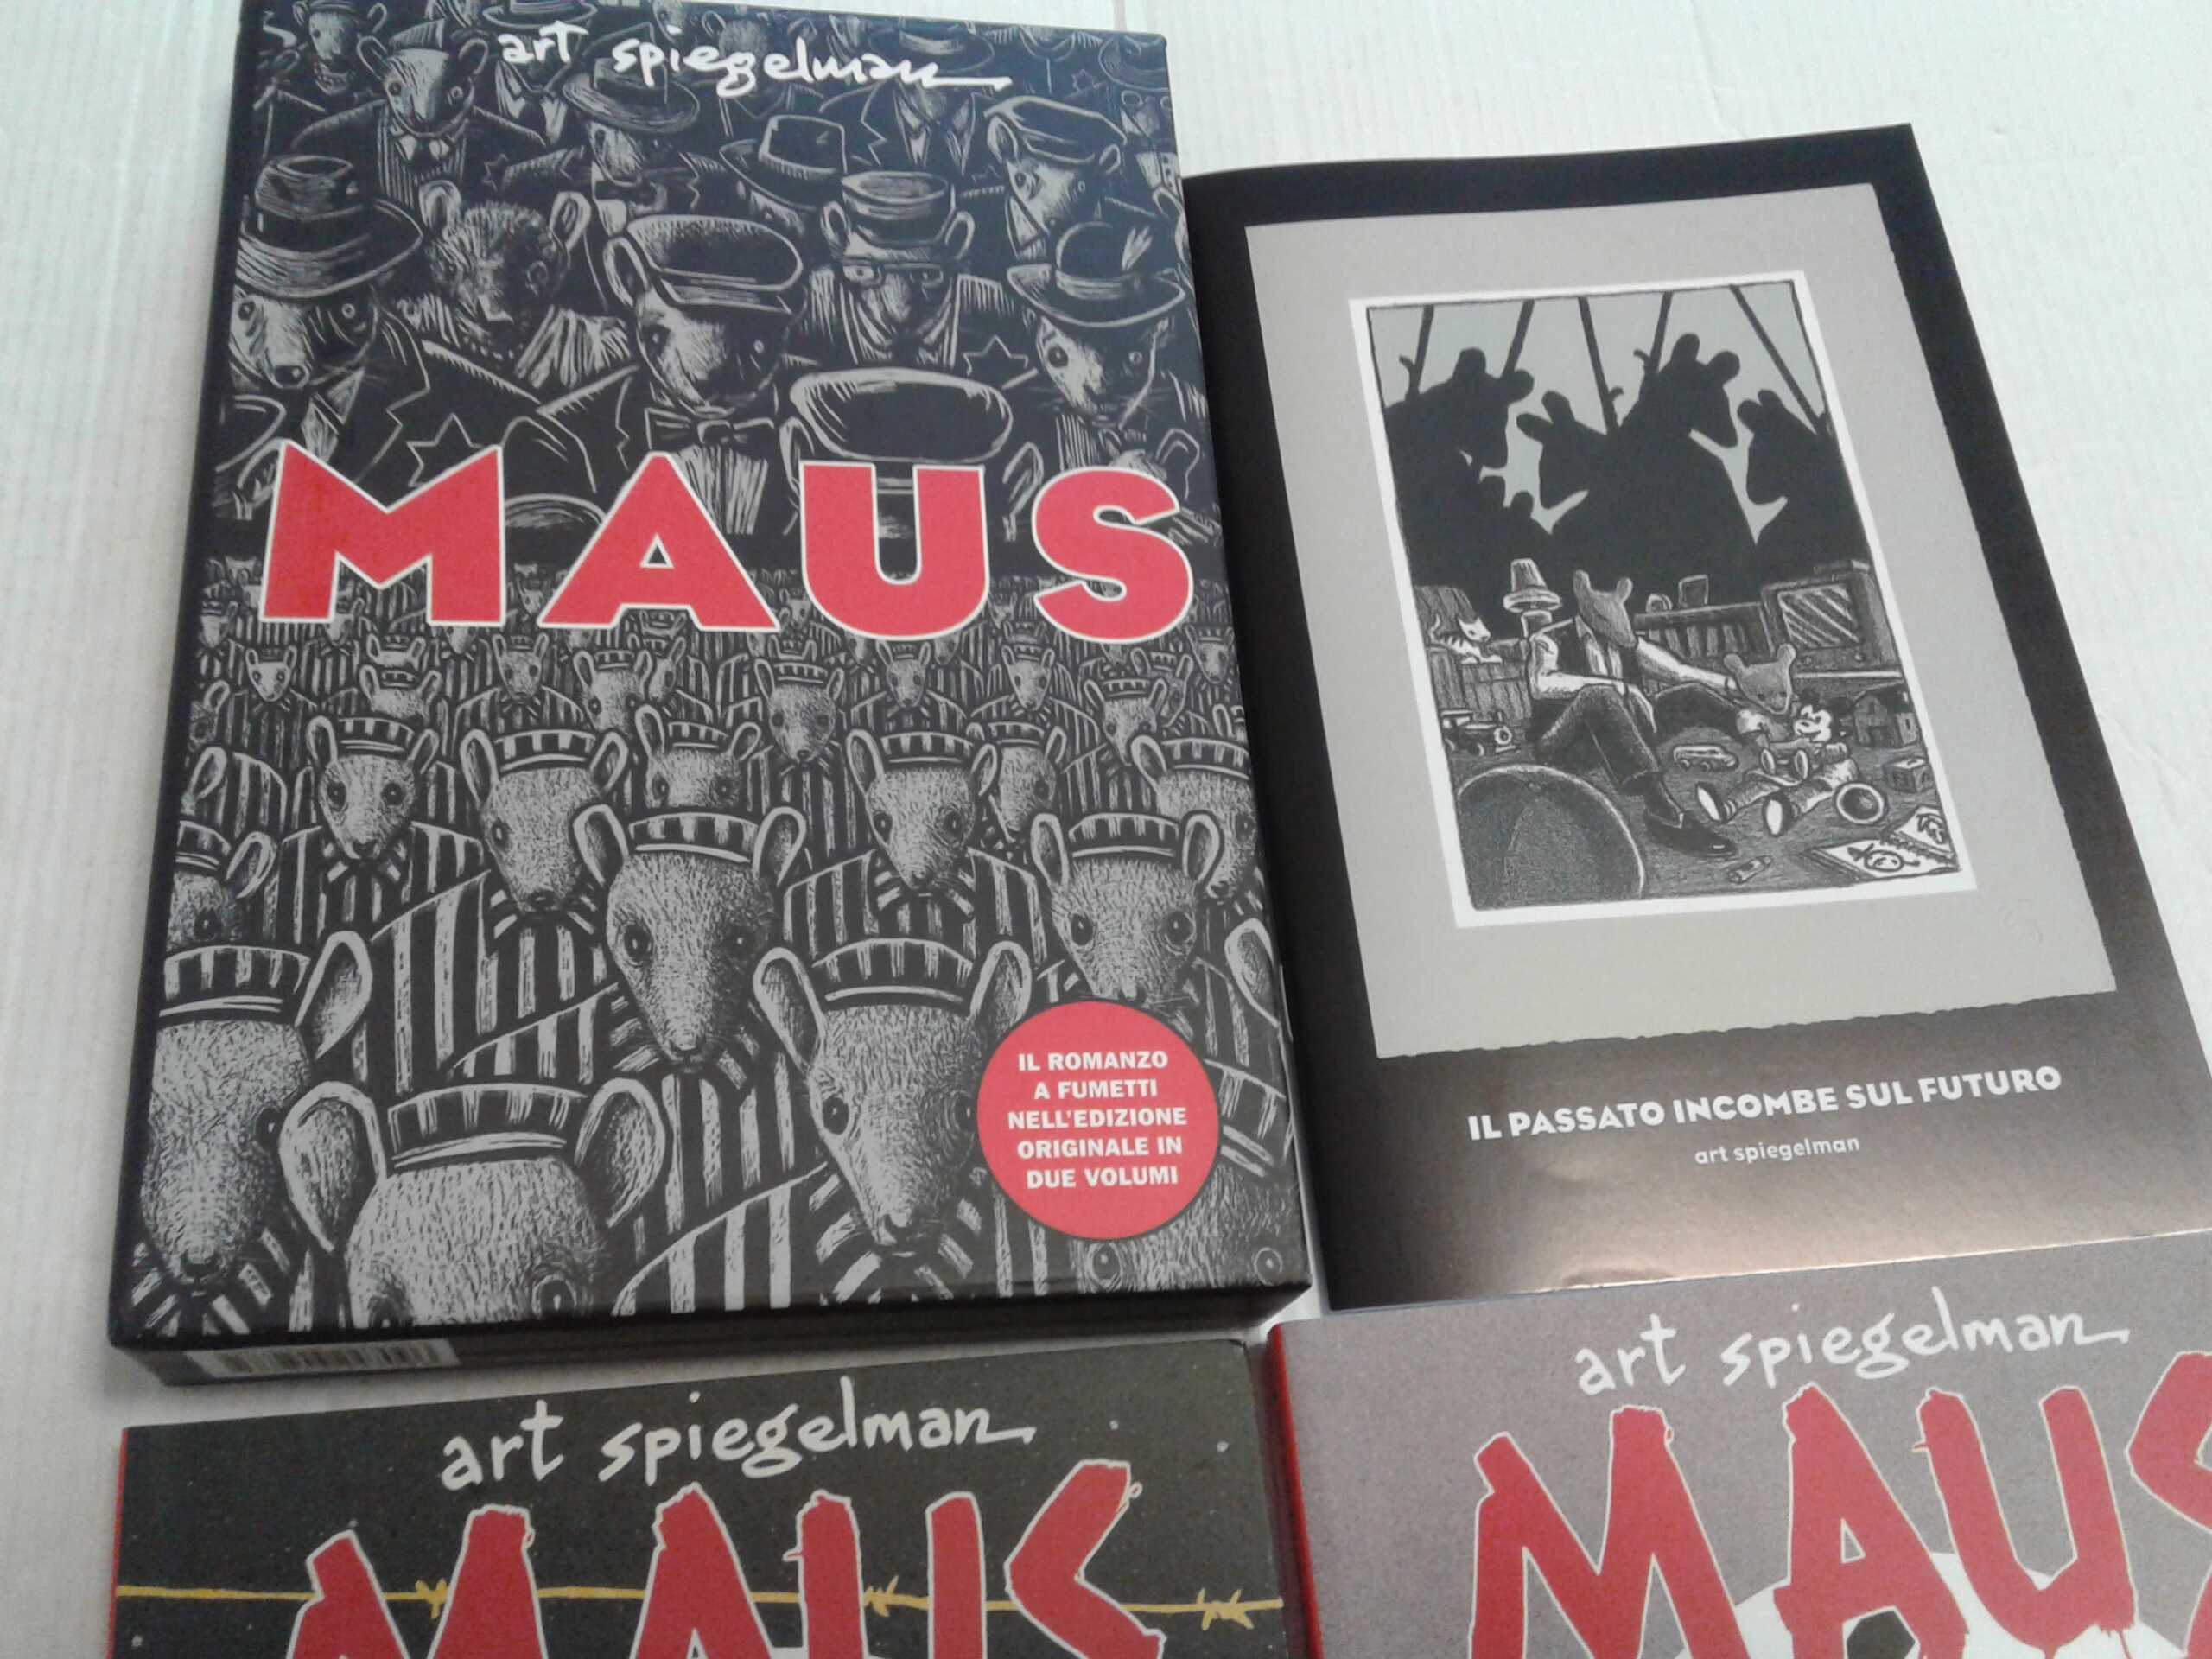 Art Spiegelman – “Maus” serie completa n° 1 e 2. con cofanetto e inserto  speciale – Cartonato – - Fumetti in Gondola